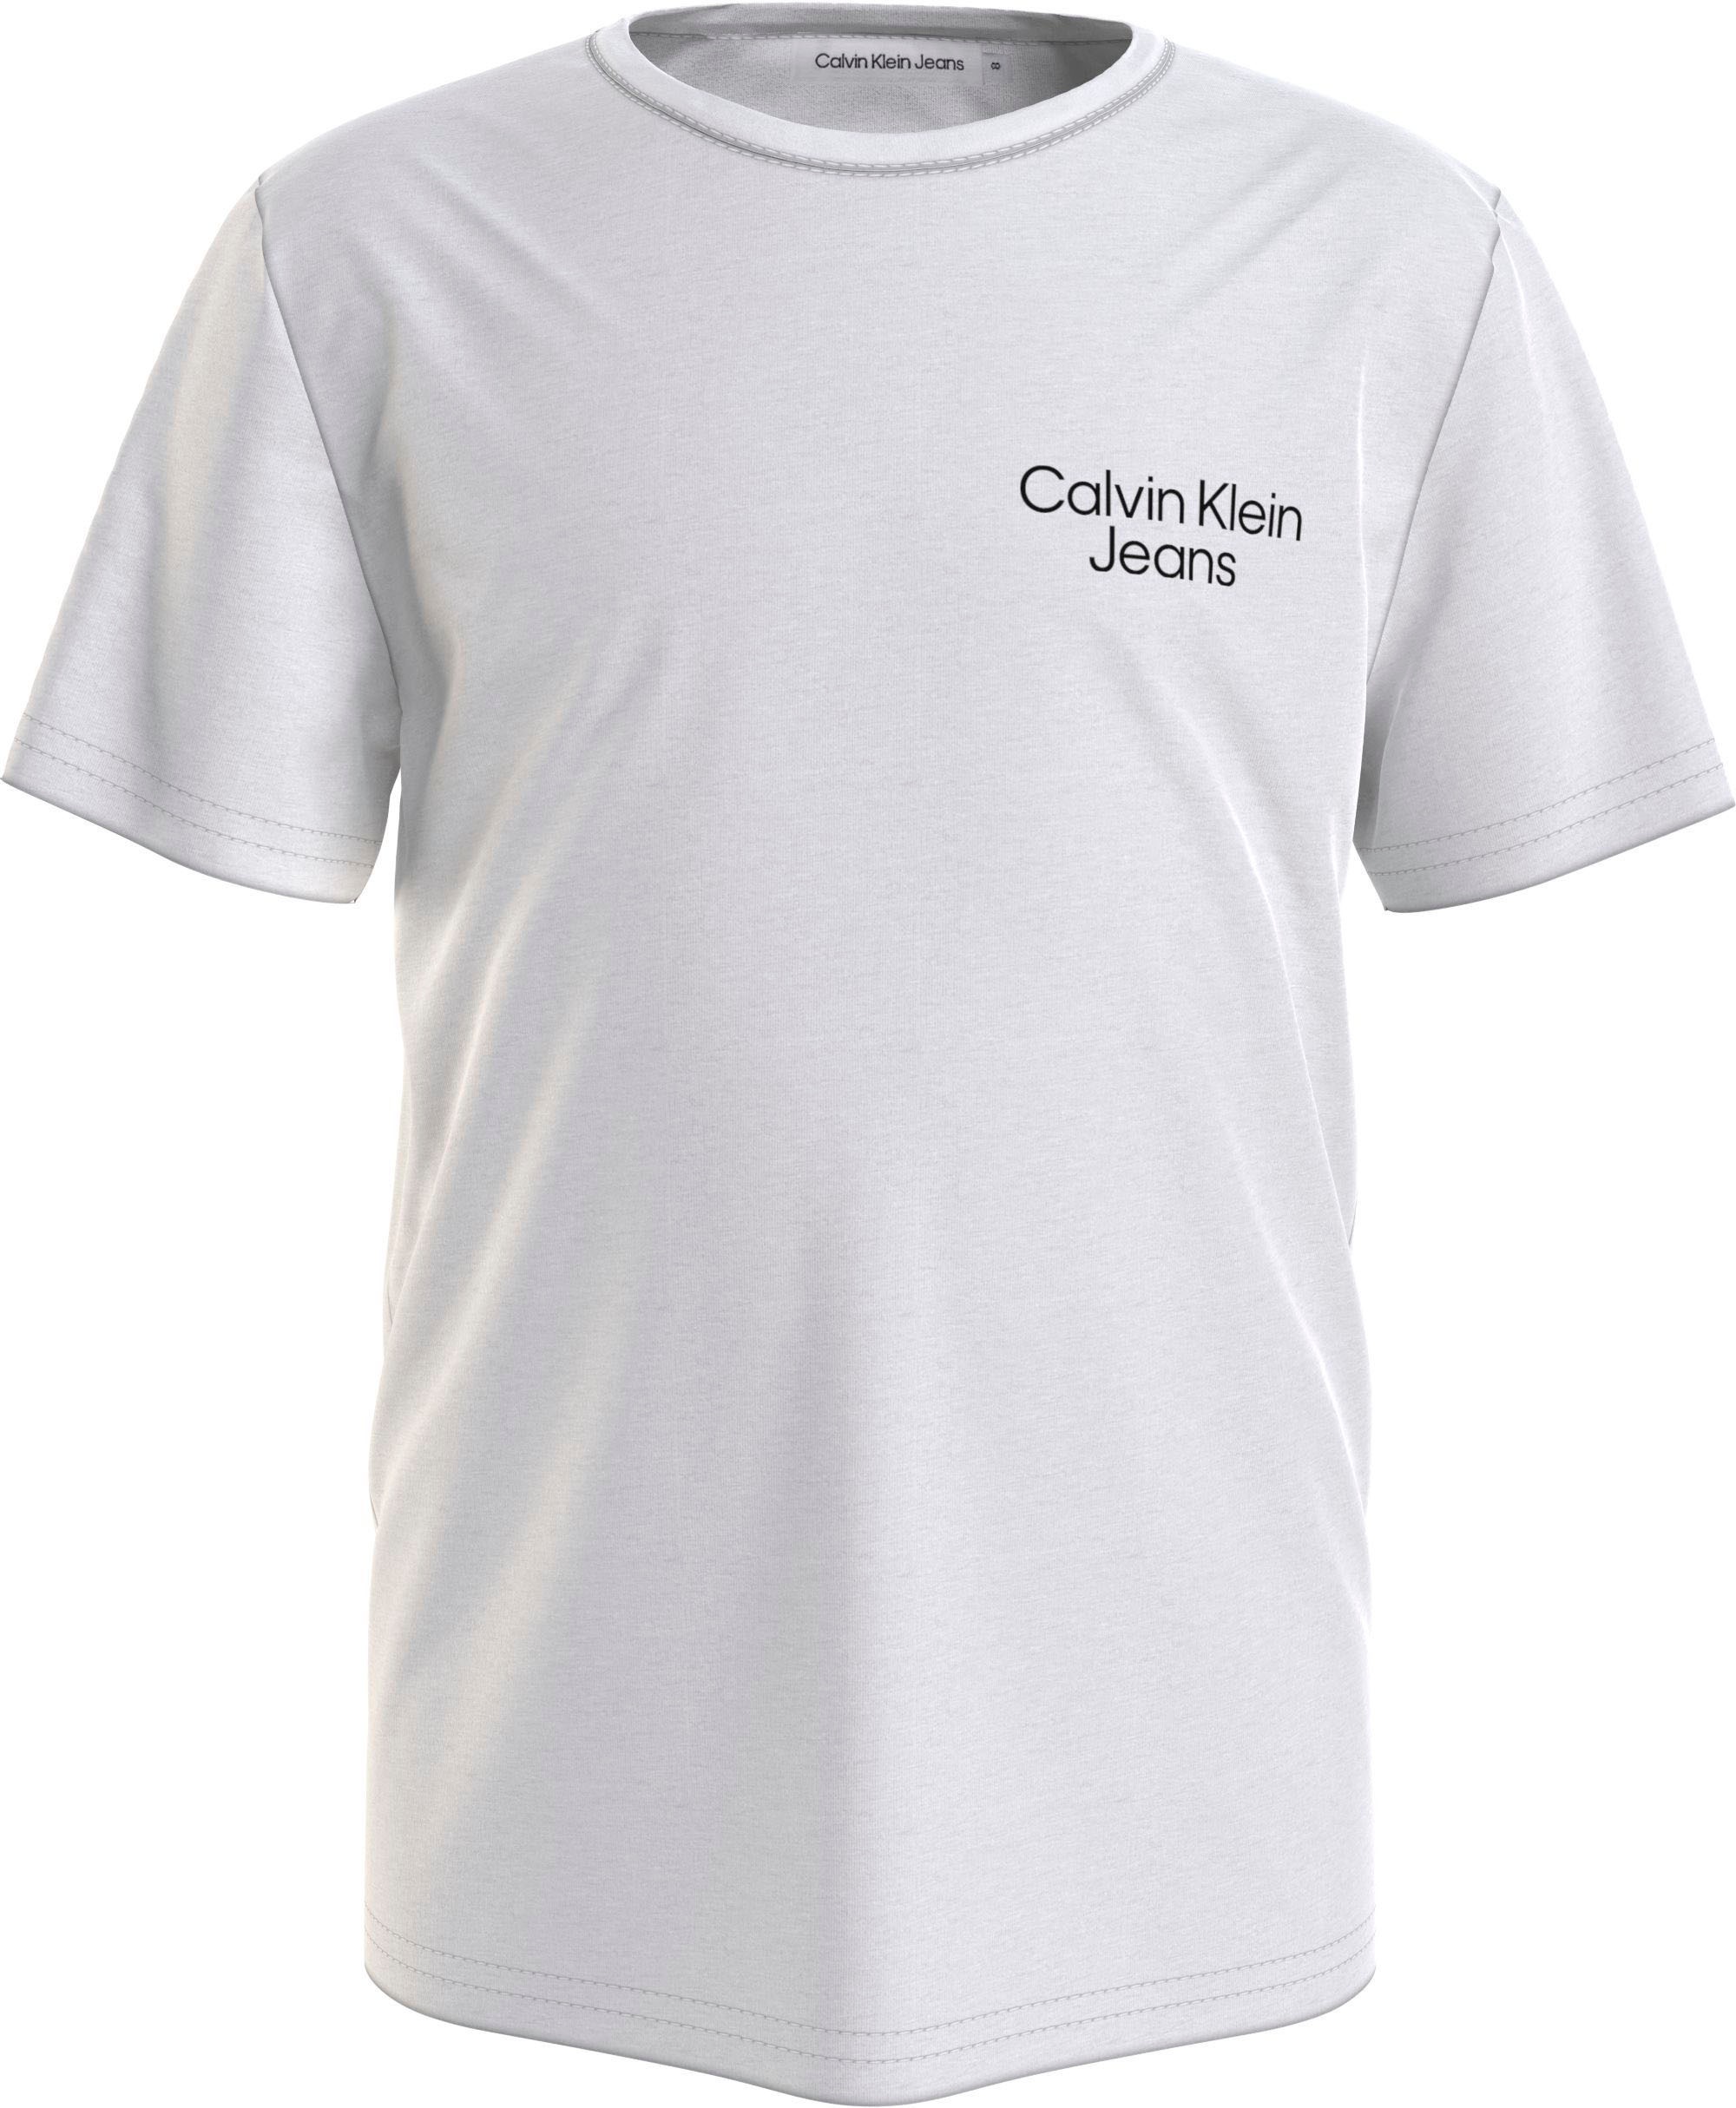 Trendige Calvin Klein Jeans Logoschriftzug auf der Mindestbestellwert ohne Klein shoppen T-Shirt, und mit am Ärmel Calvin Brust